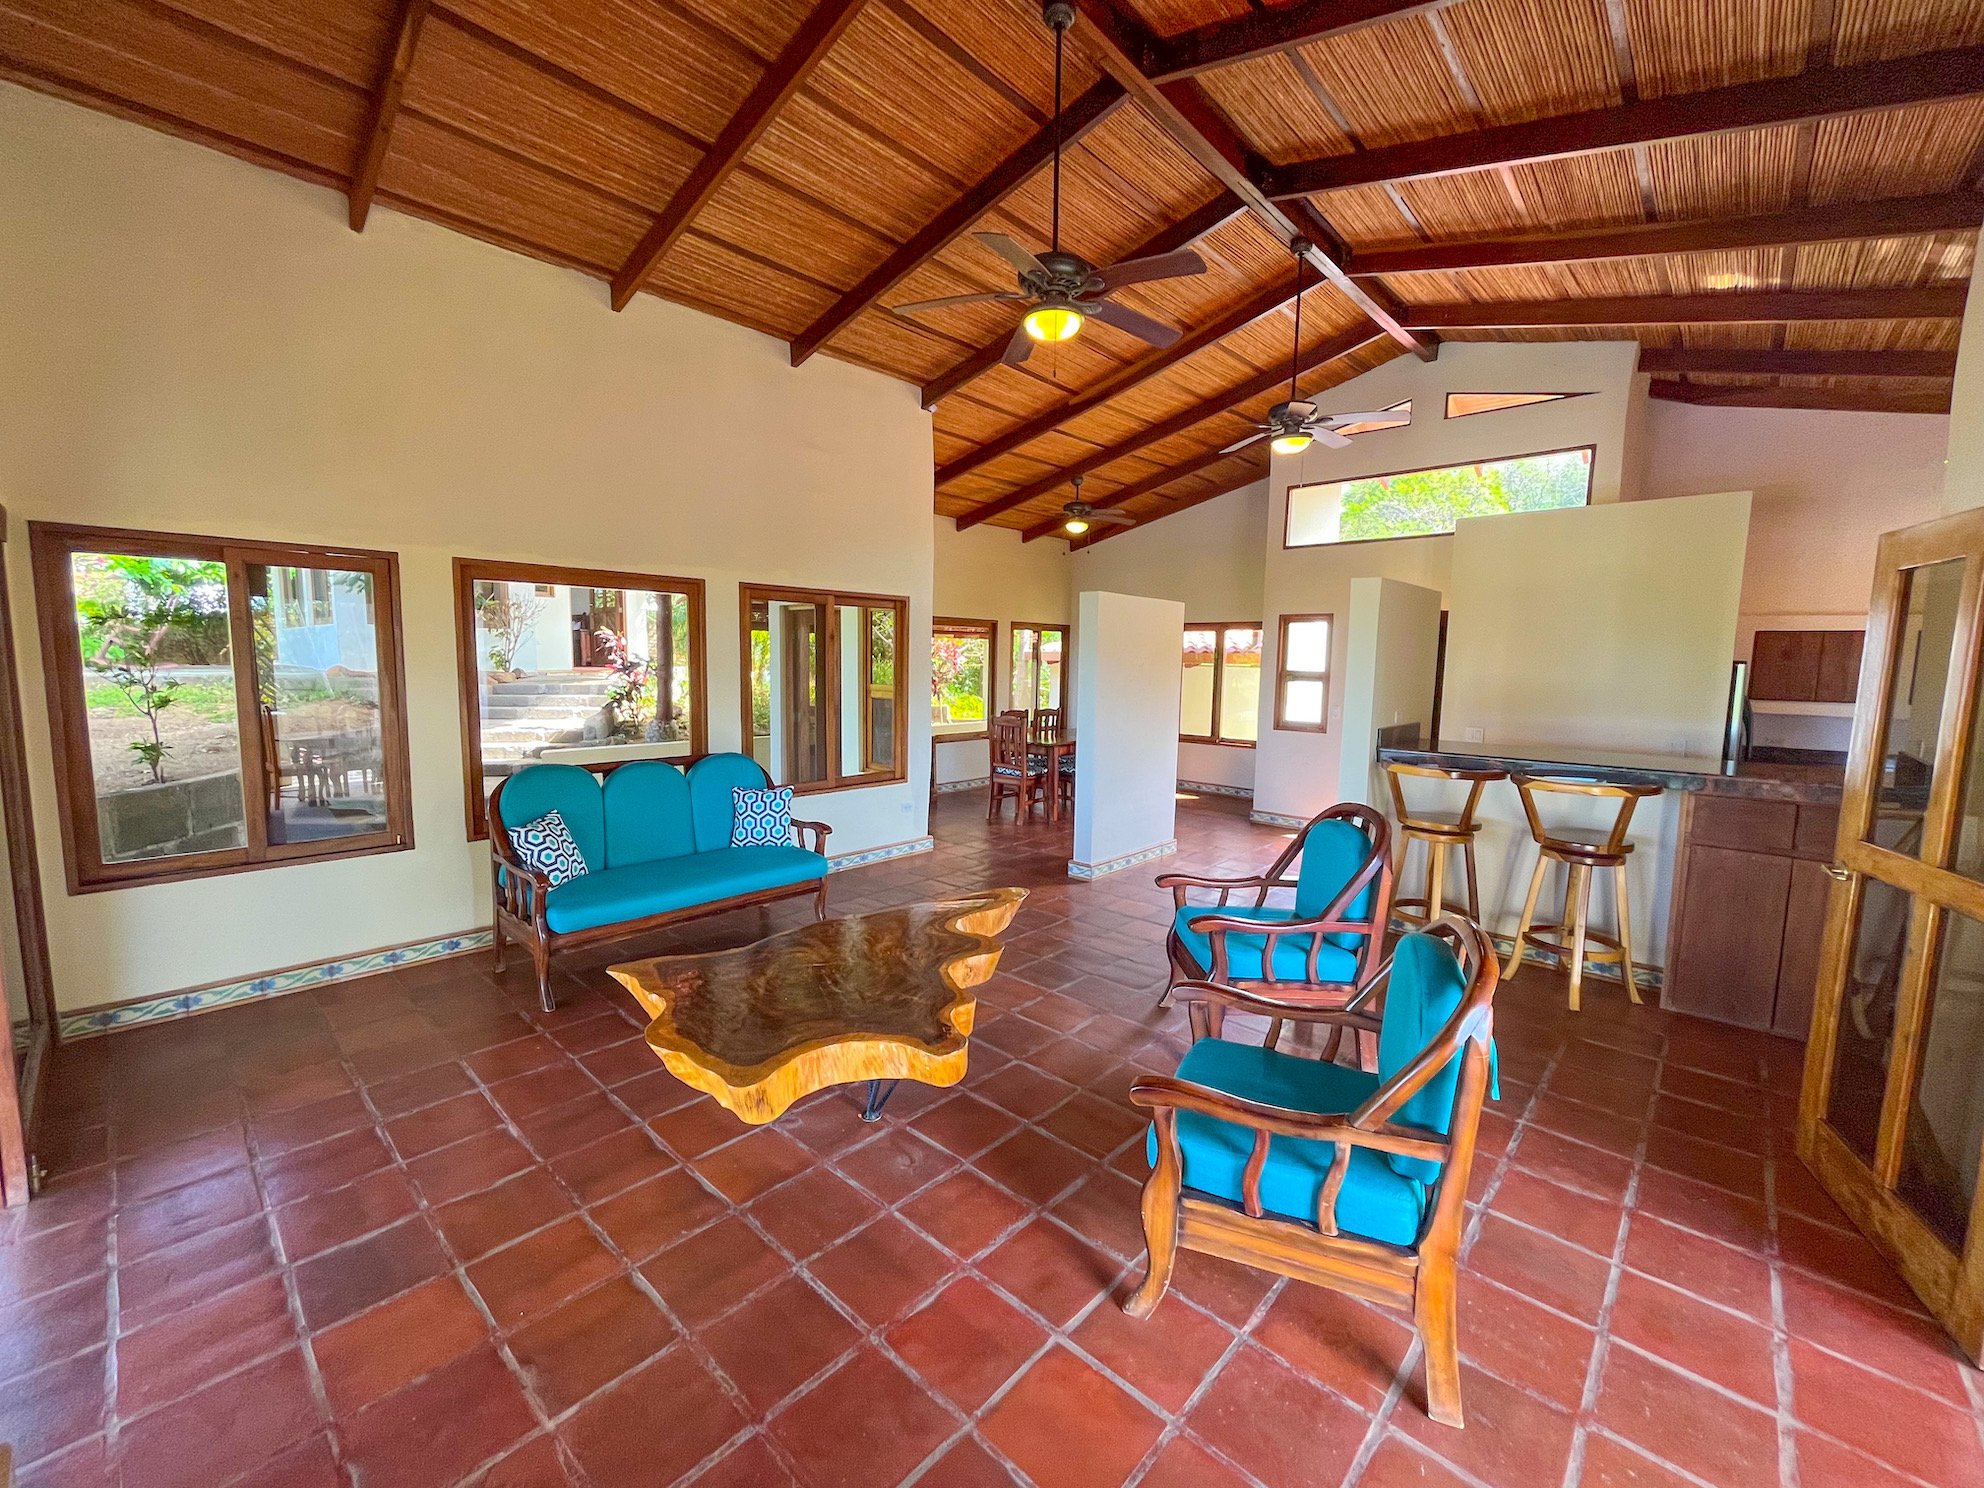 Large Home For Sale San Juan Del Sur Property Real Estate Nicaragua 2023 14.JPEG